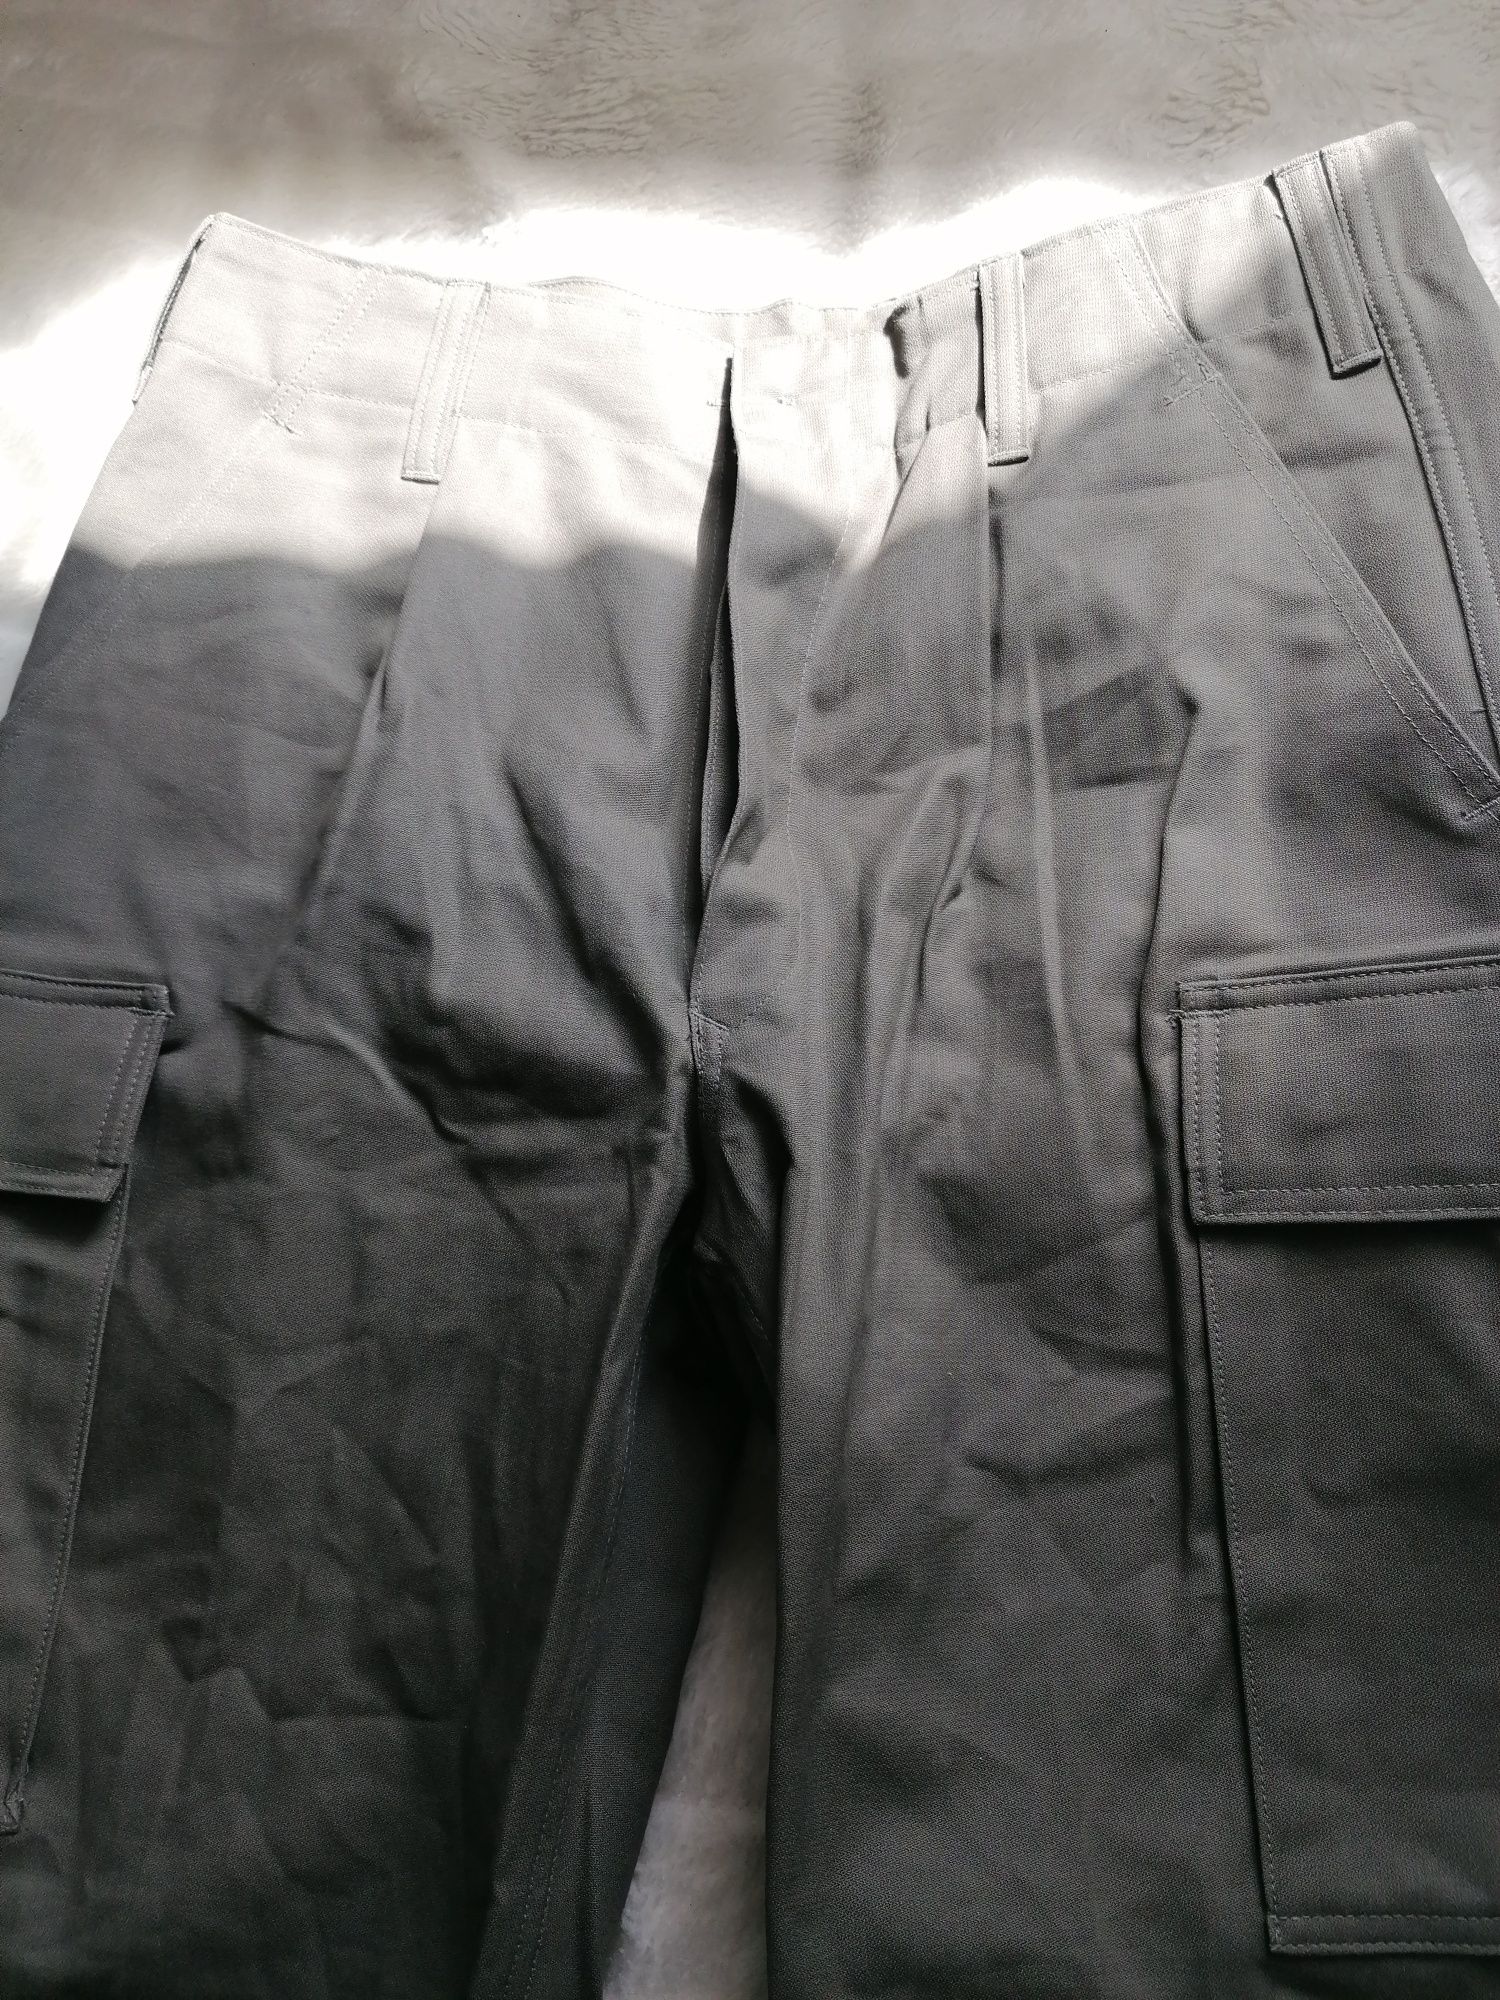 Spodnie bojówki wojskowe Leo Kolher męskie nowe rozmiar M